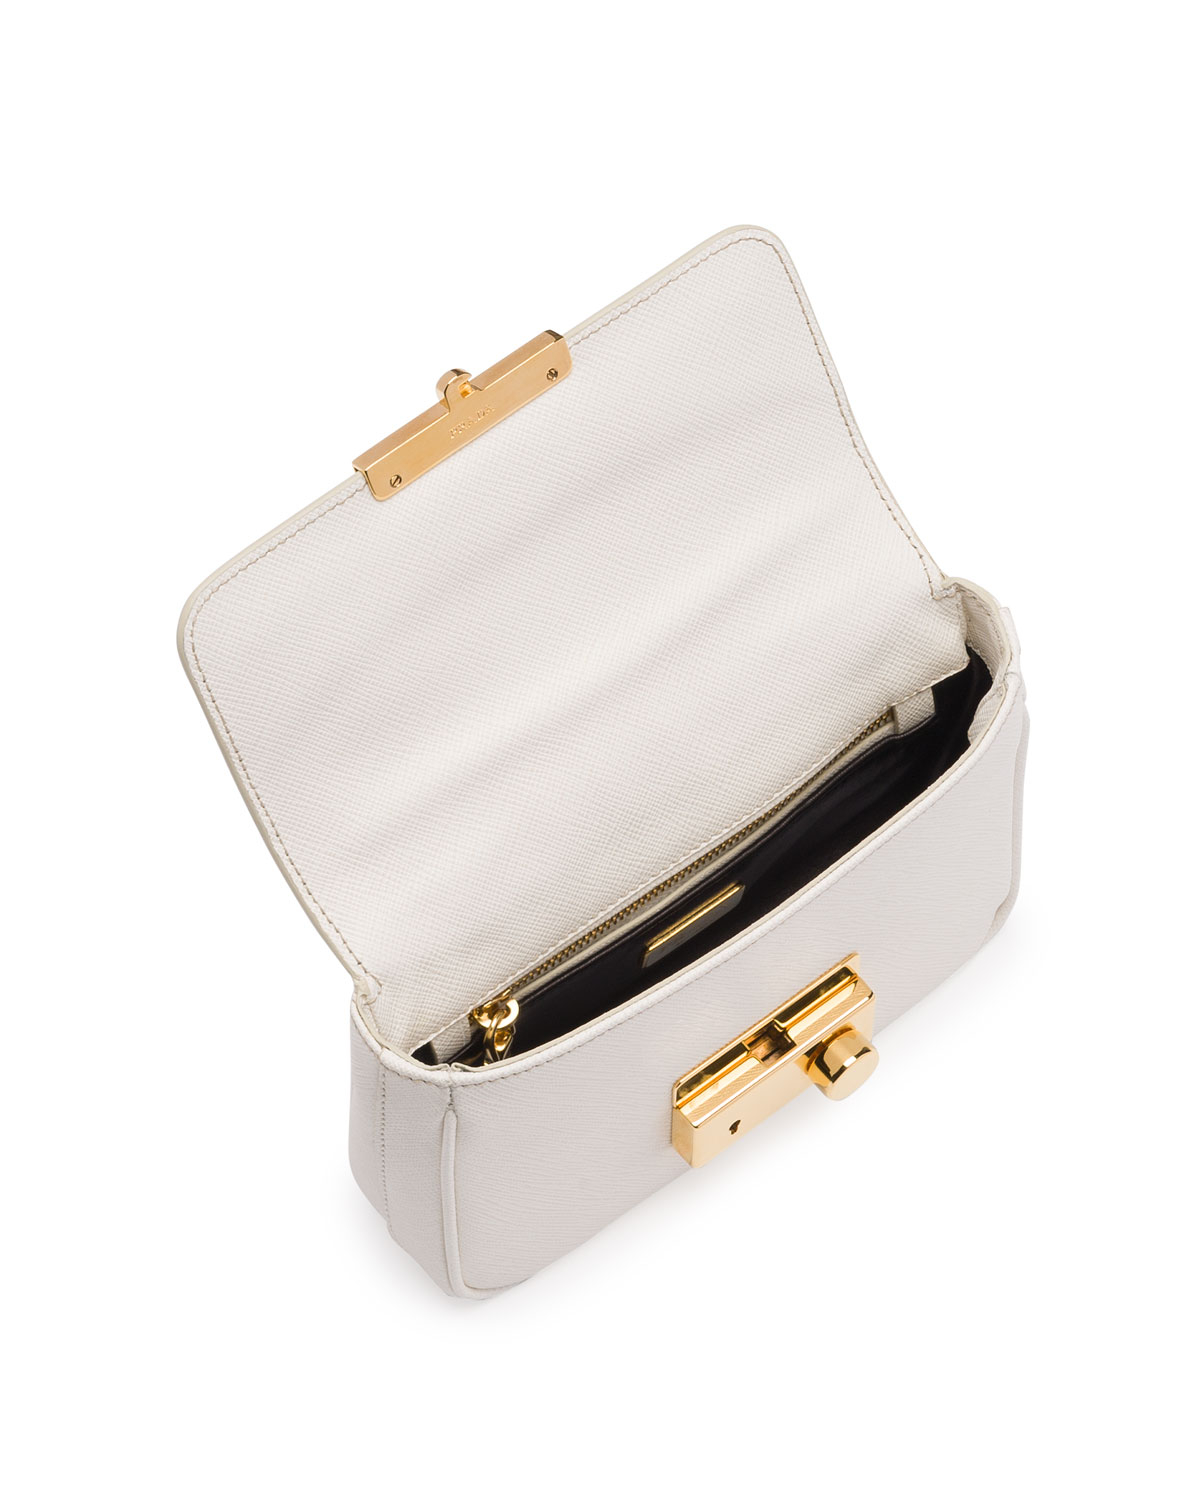 Prada Saffiano Mini Sound Crossbody Bag in White - Lyst